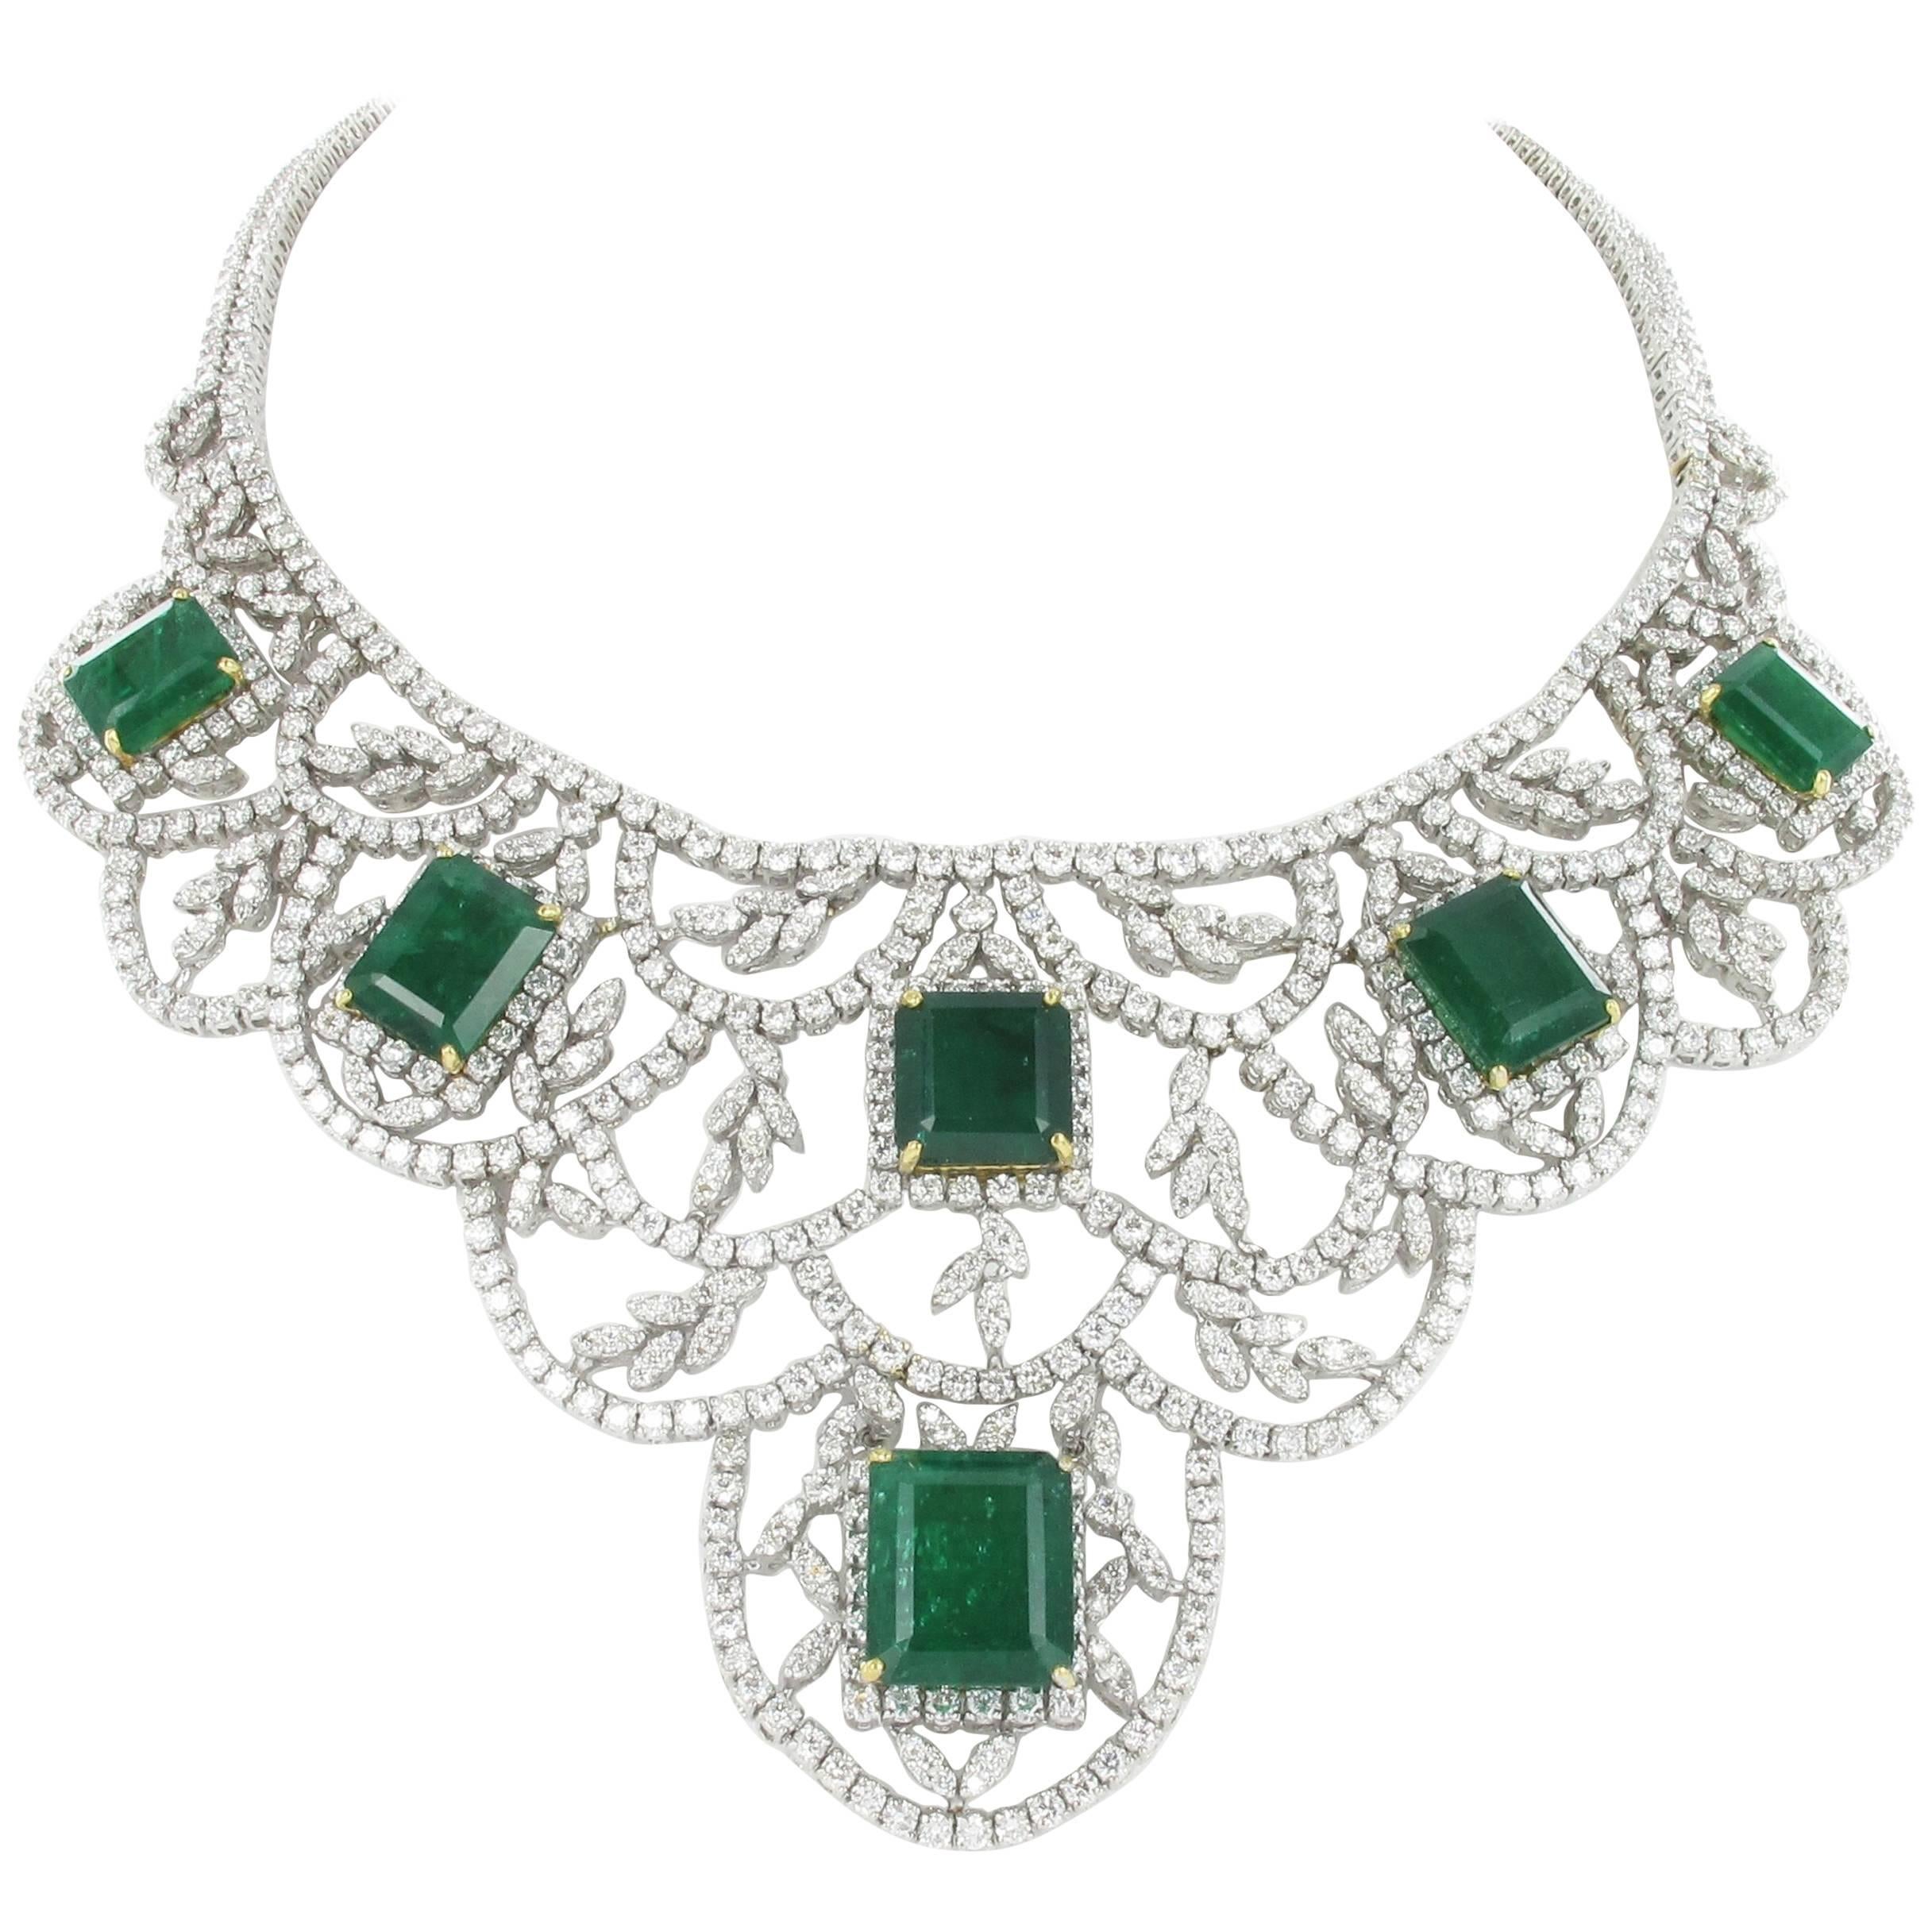 Impressive Emerald and Diamond Parure in White Gold